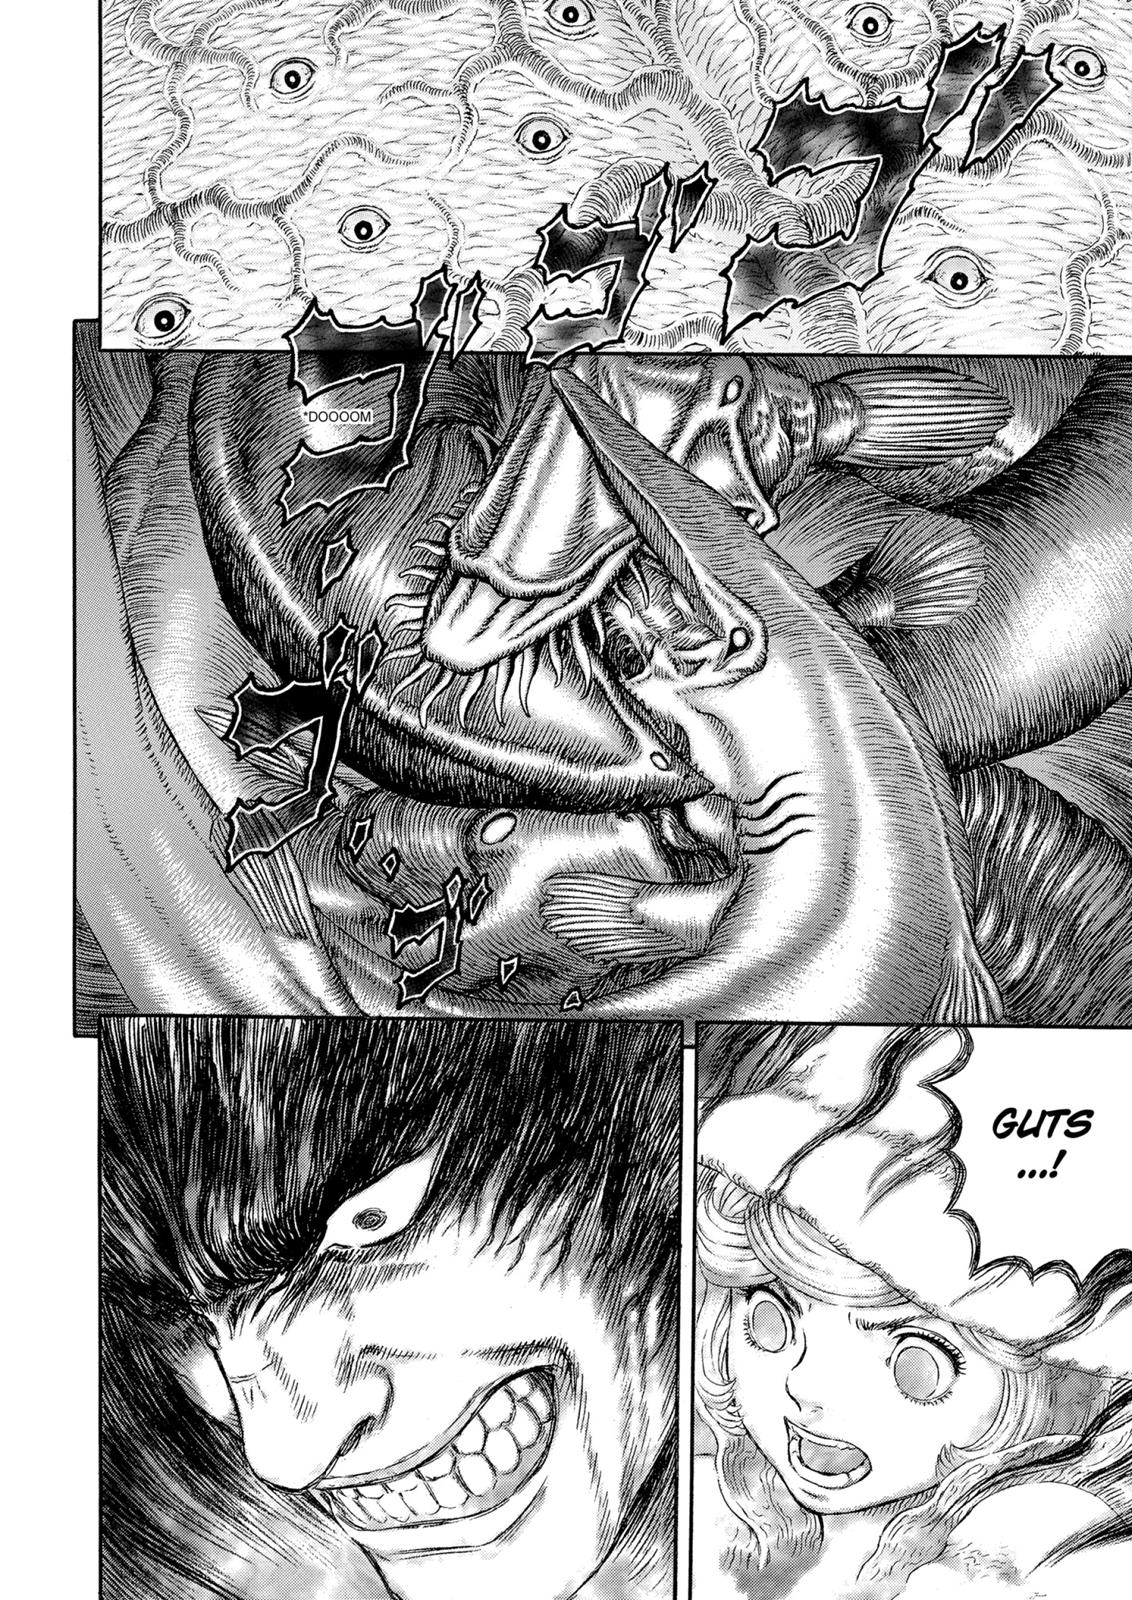 Berserk Manga Chapter 324 image 10